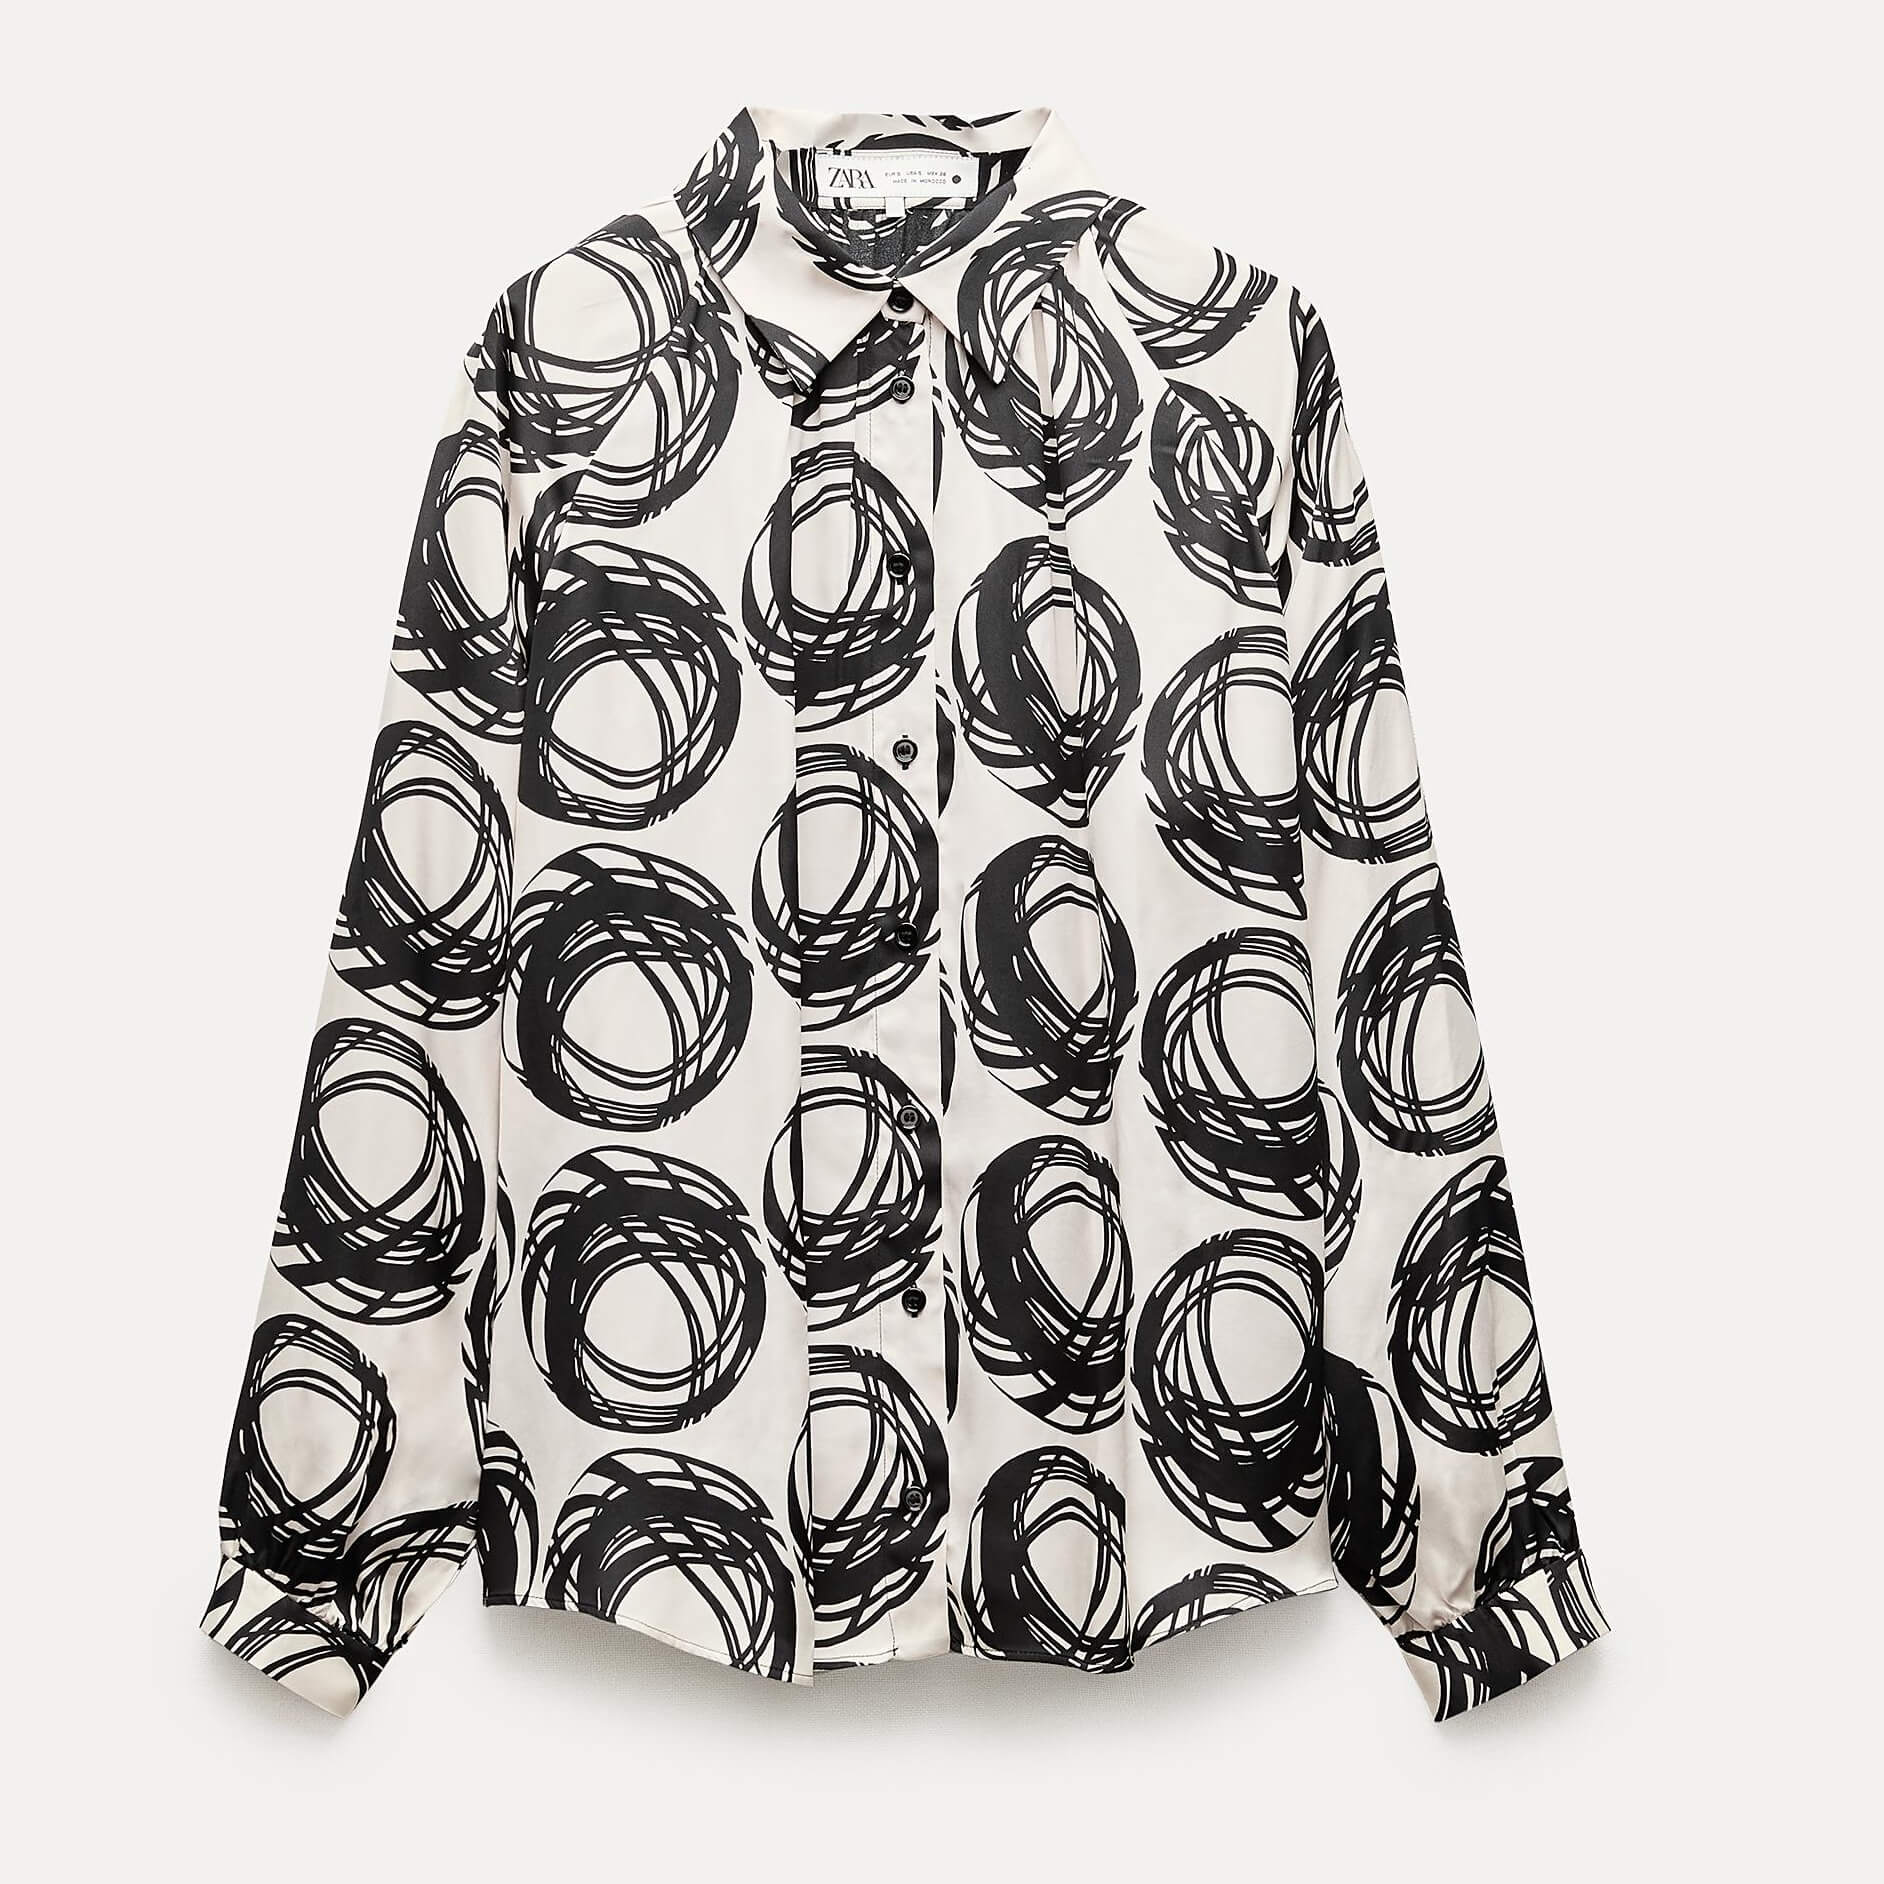 Блузка Zara ZW Collection Printed, молочный/черный женская блузка из вискозы с цветочным воротником